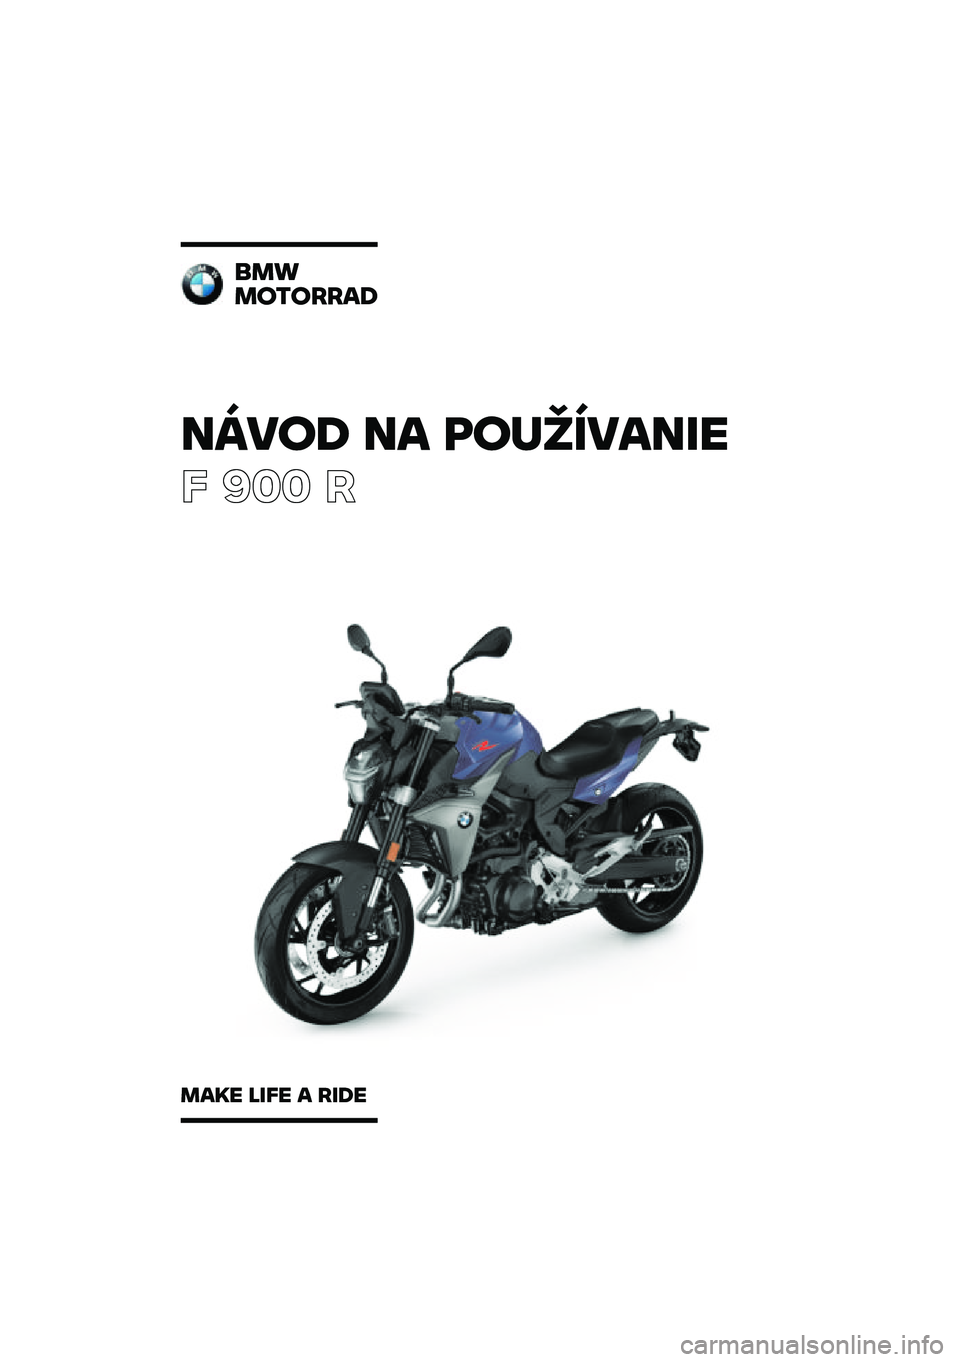 BMW MOTORRAD F 900 R 2020  Návod na používanie (in Slovak) �����\b �� �	��
�������
� ��� �
���
��������\b
���� ���� � ���\b� 